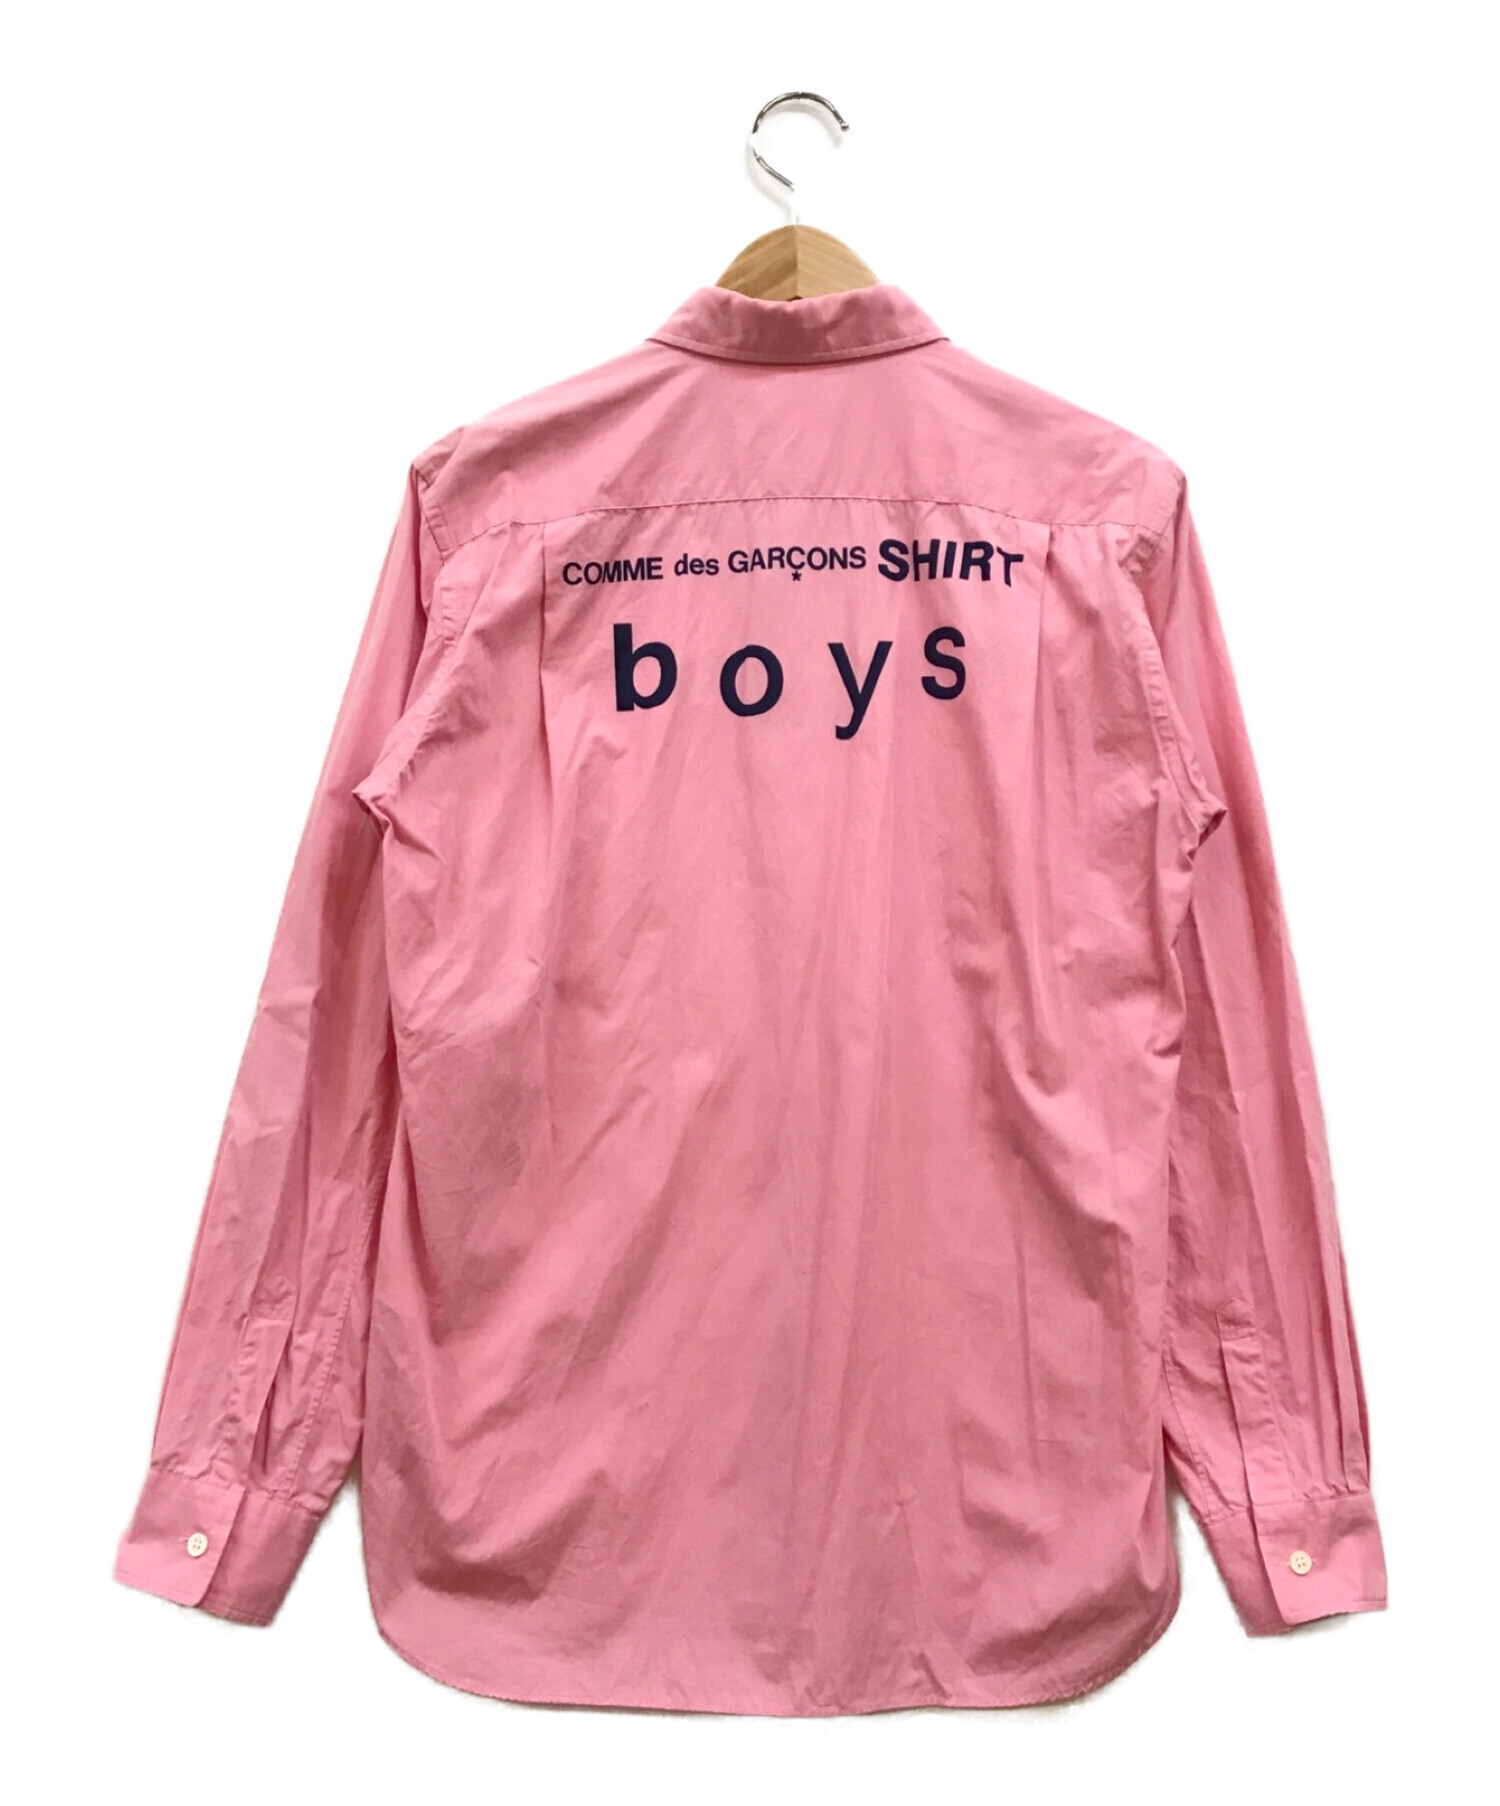 コムデギャルソン boy バックプリント シャツ pink sizeM - シャツ